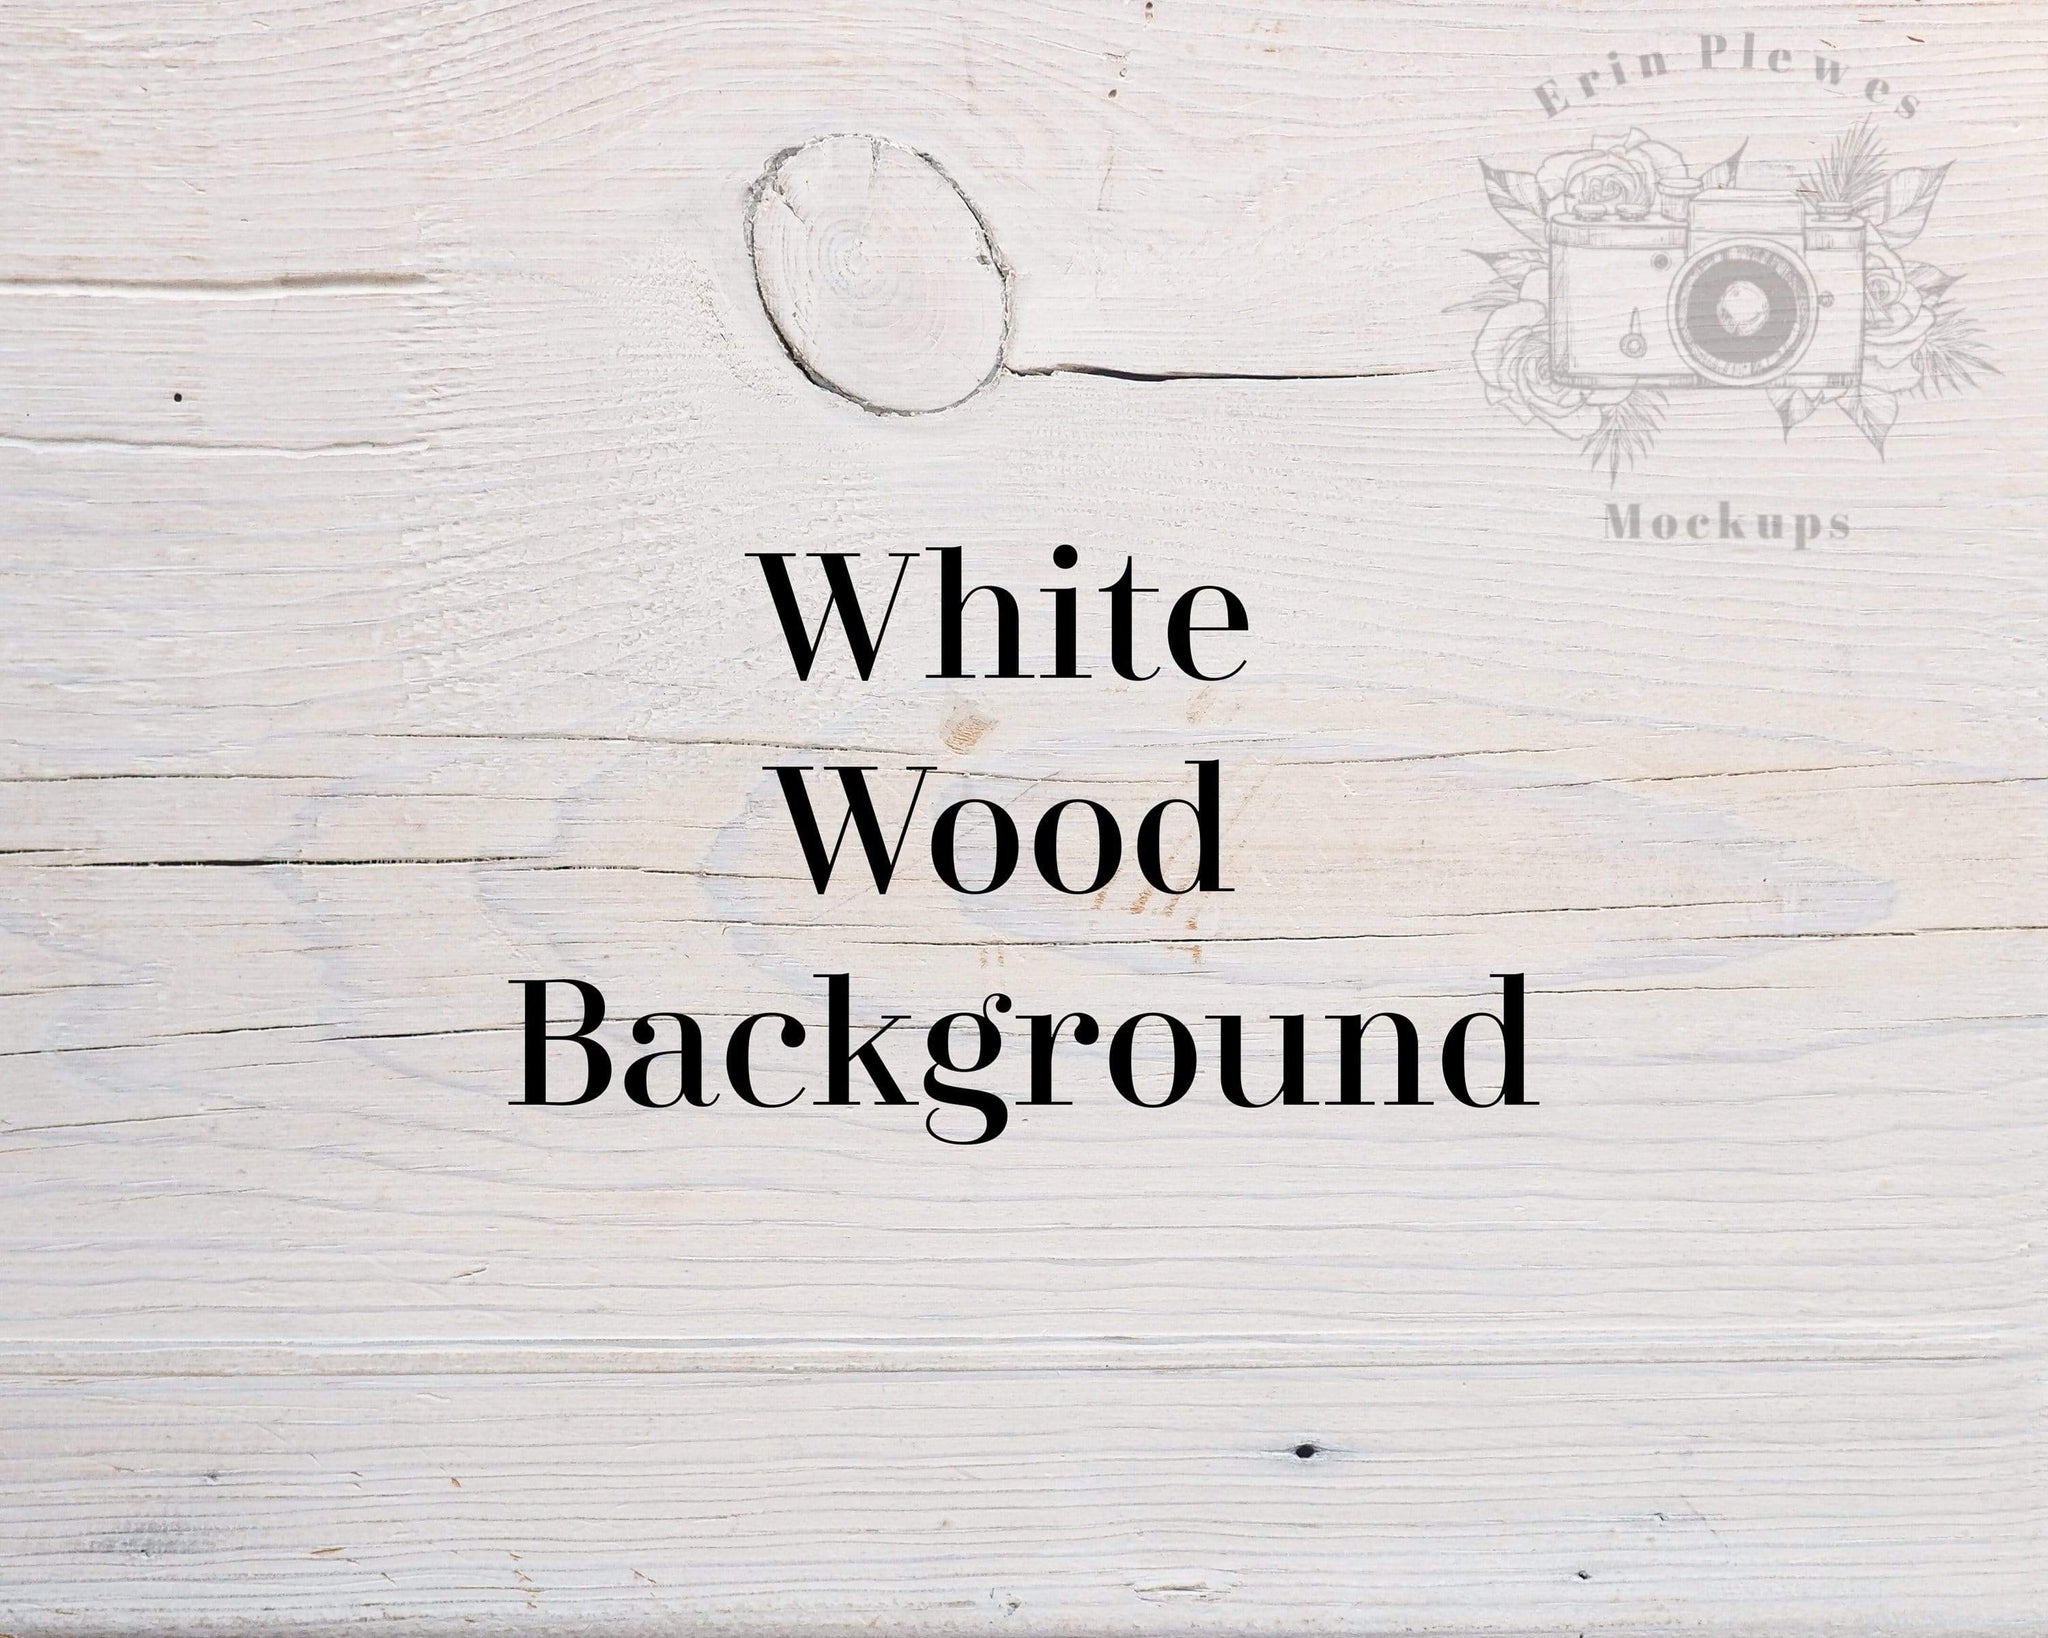 Nền gỗ trắng tạo nên không gian sống thanh lịch và sang trọng. Với màu sắc tinh tế và chất liệu tự nhiên, nền gỗ trắng trông rất thu hút mắt. Hãy xem những hình ảnh liên quan để hiểu thêm về cách sử dụng nền gỗ trắng để tạo ra một không gian sống hoàn hảo.